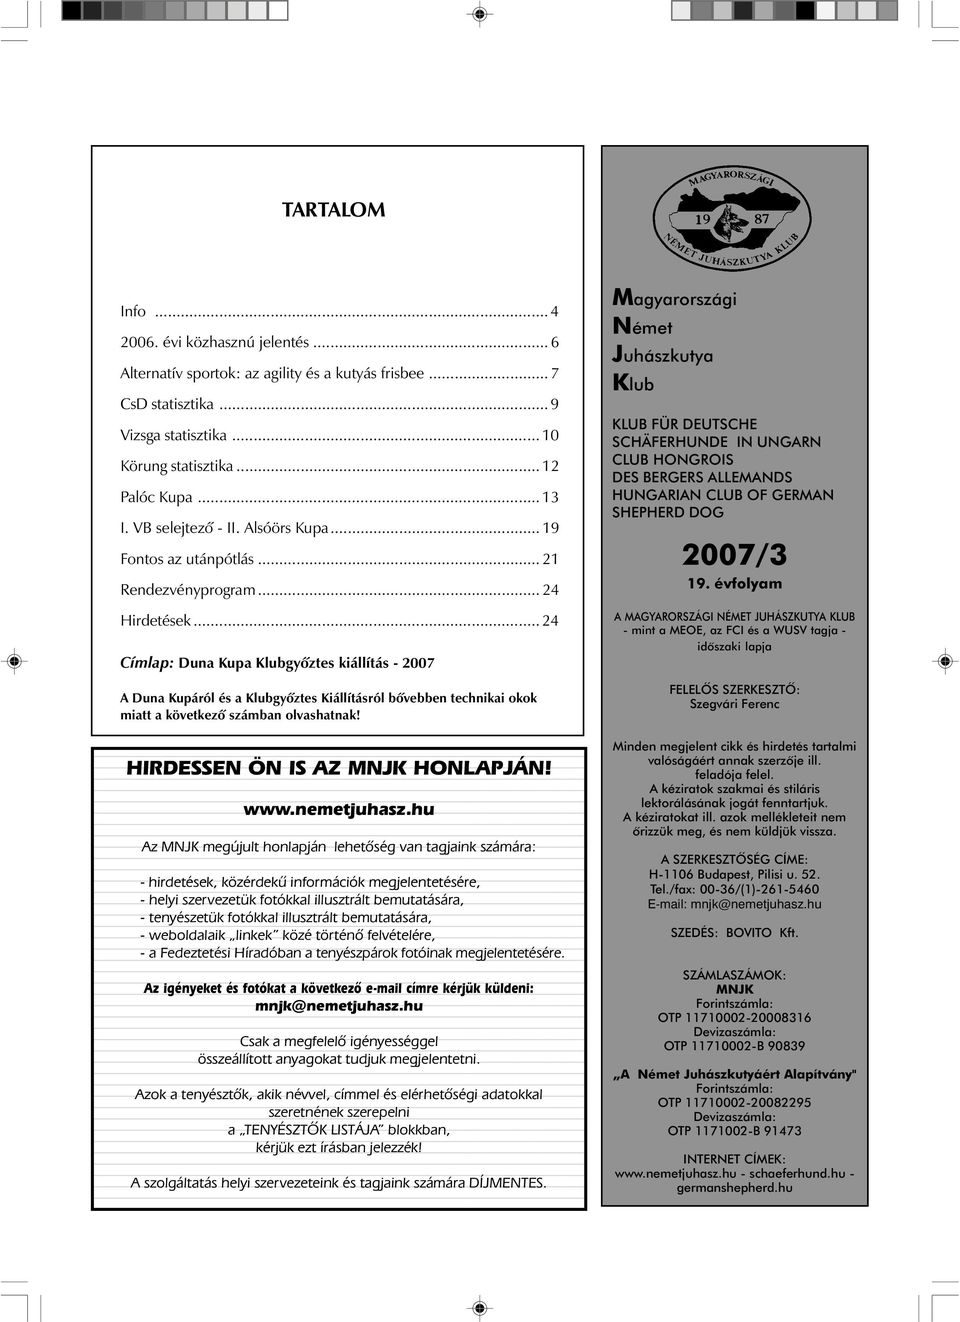 2007/3 19. évfolyam. Magyarországi Német Juhászkutya Klub TARTALOM  HIRDESSEN ÖN IS AZ MNJK HONLAPJÁN! NJ ÚJSÁG 2007/3. Info... - PDF Ingyenes  letöltés